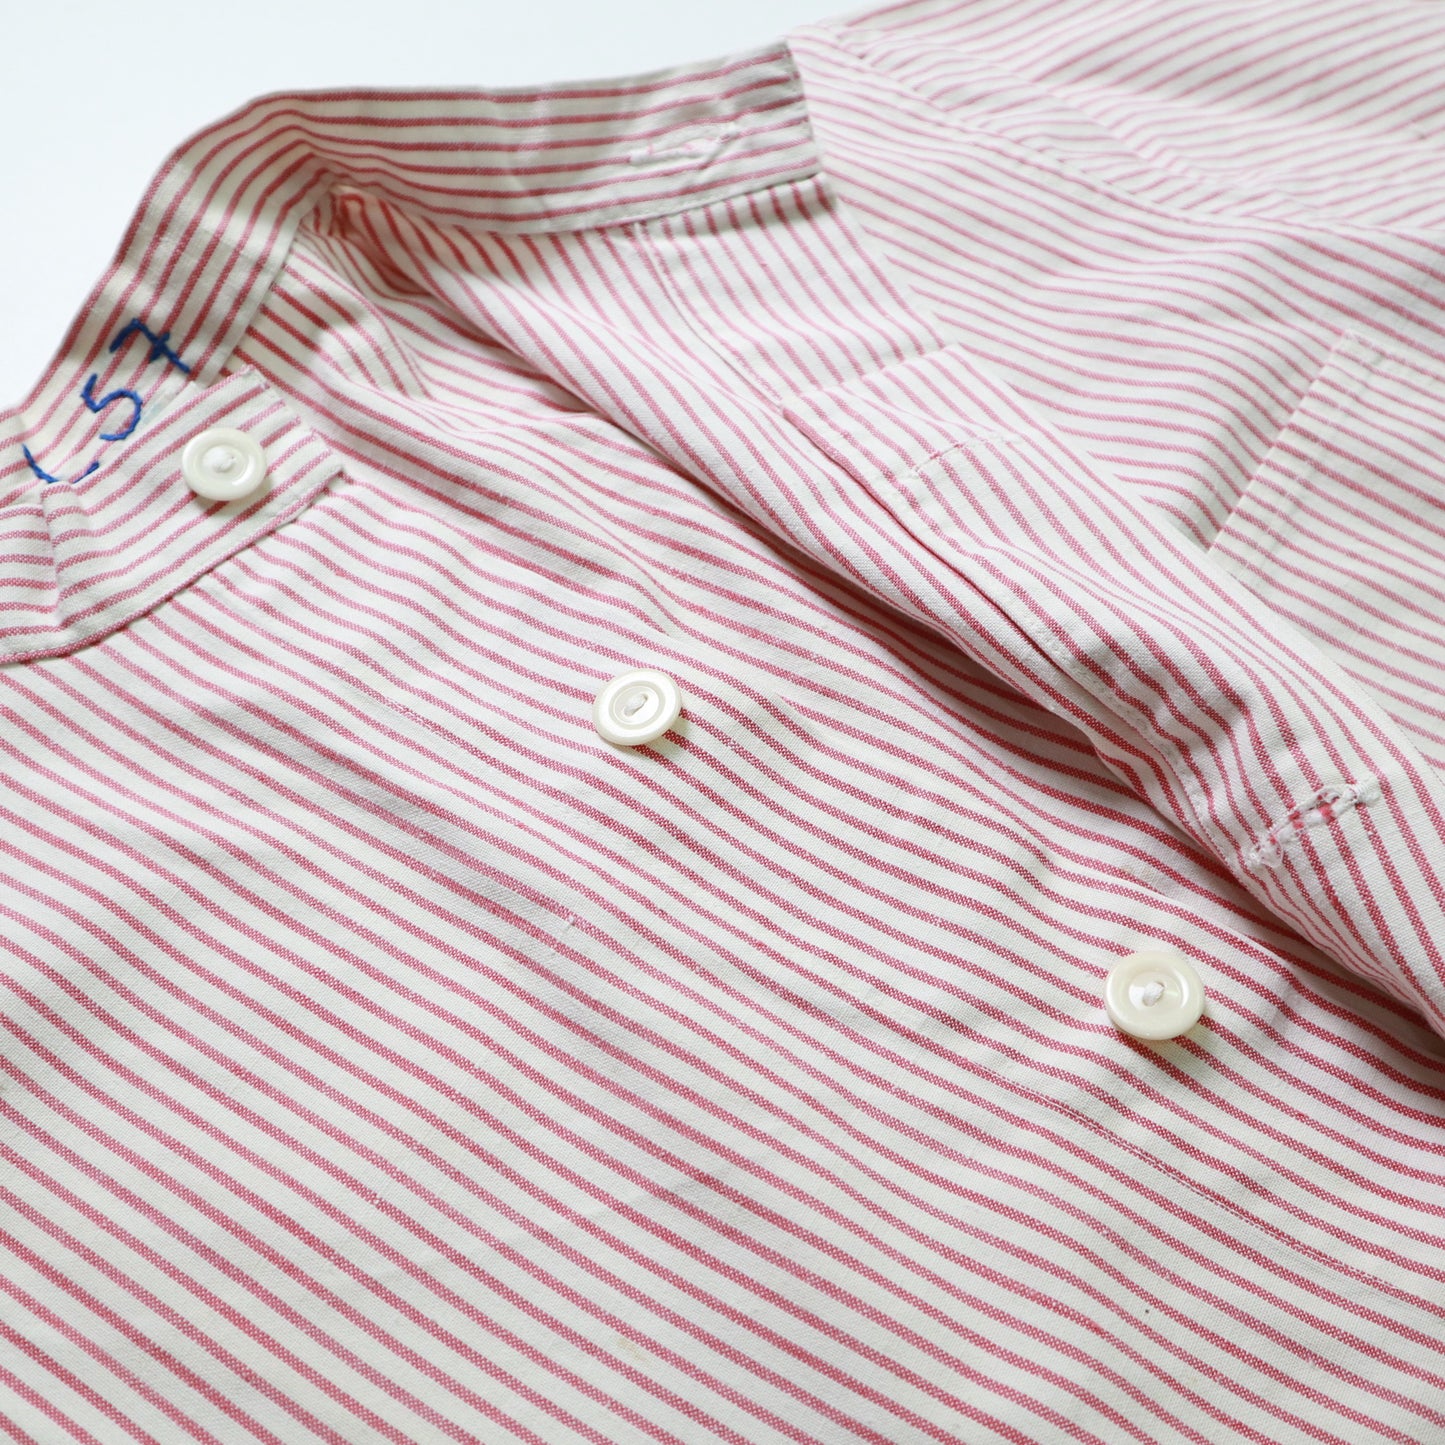 1970年代の赤と白のストライプのファーマーズシャツオーバーオール